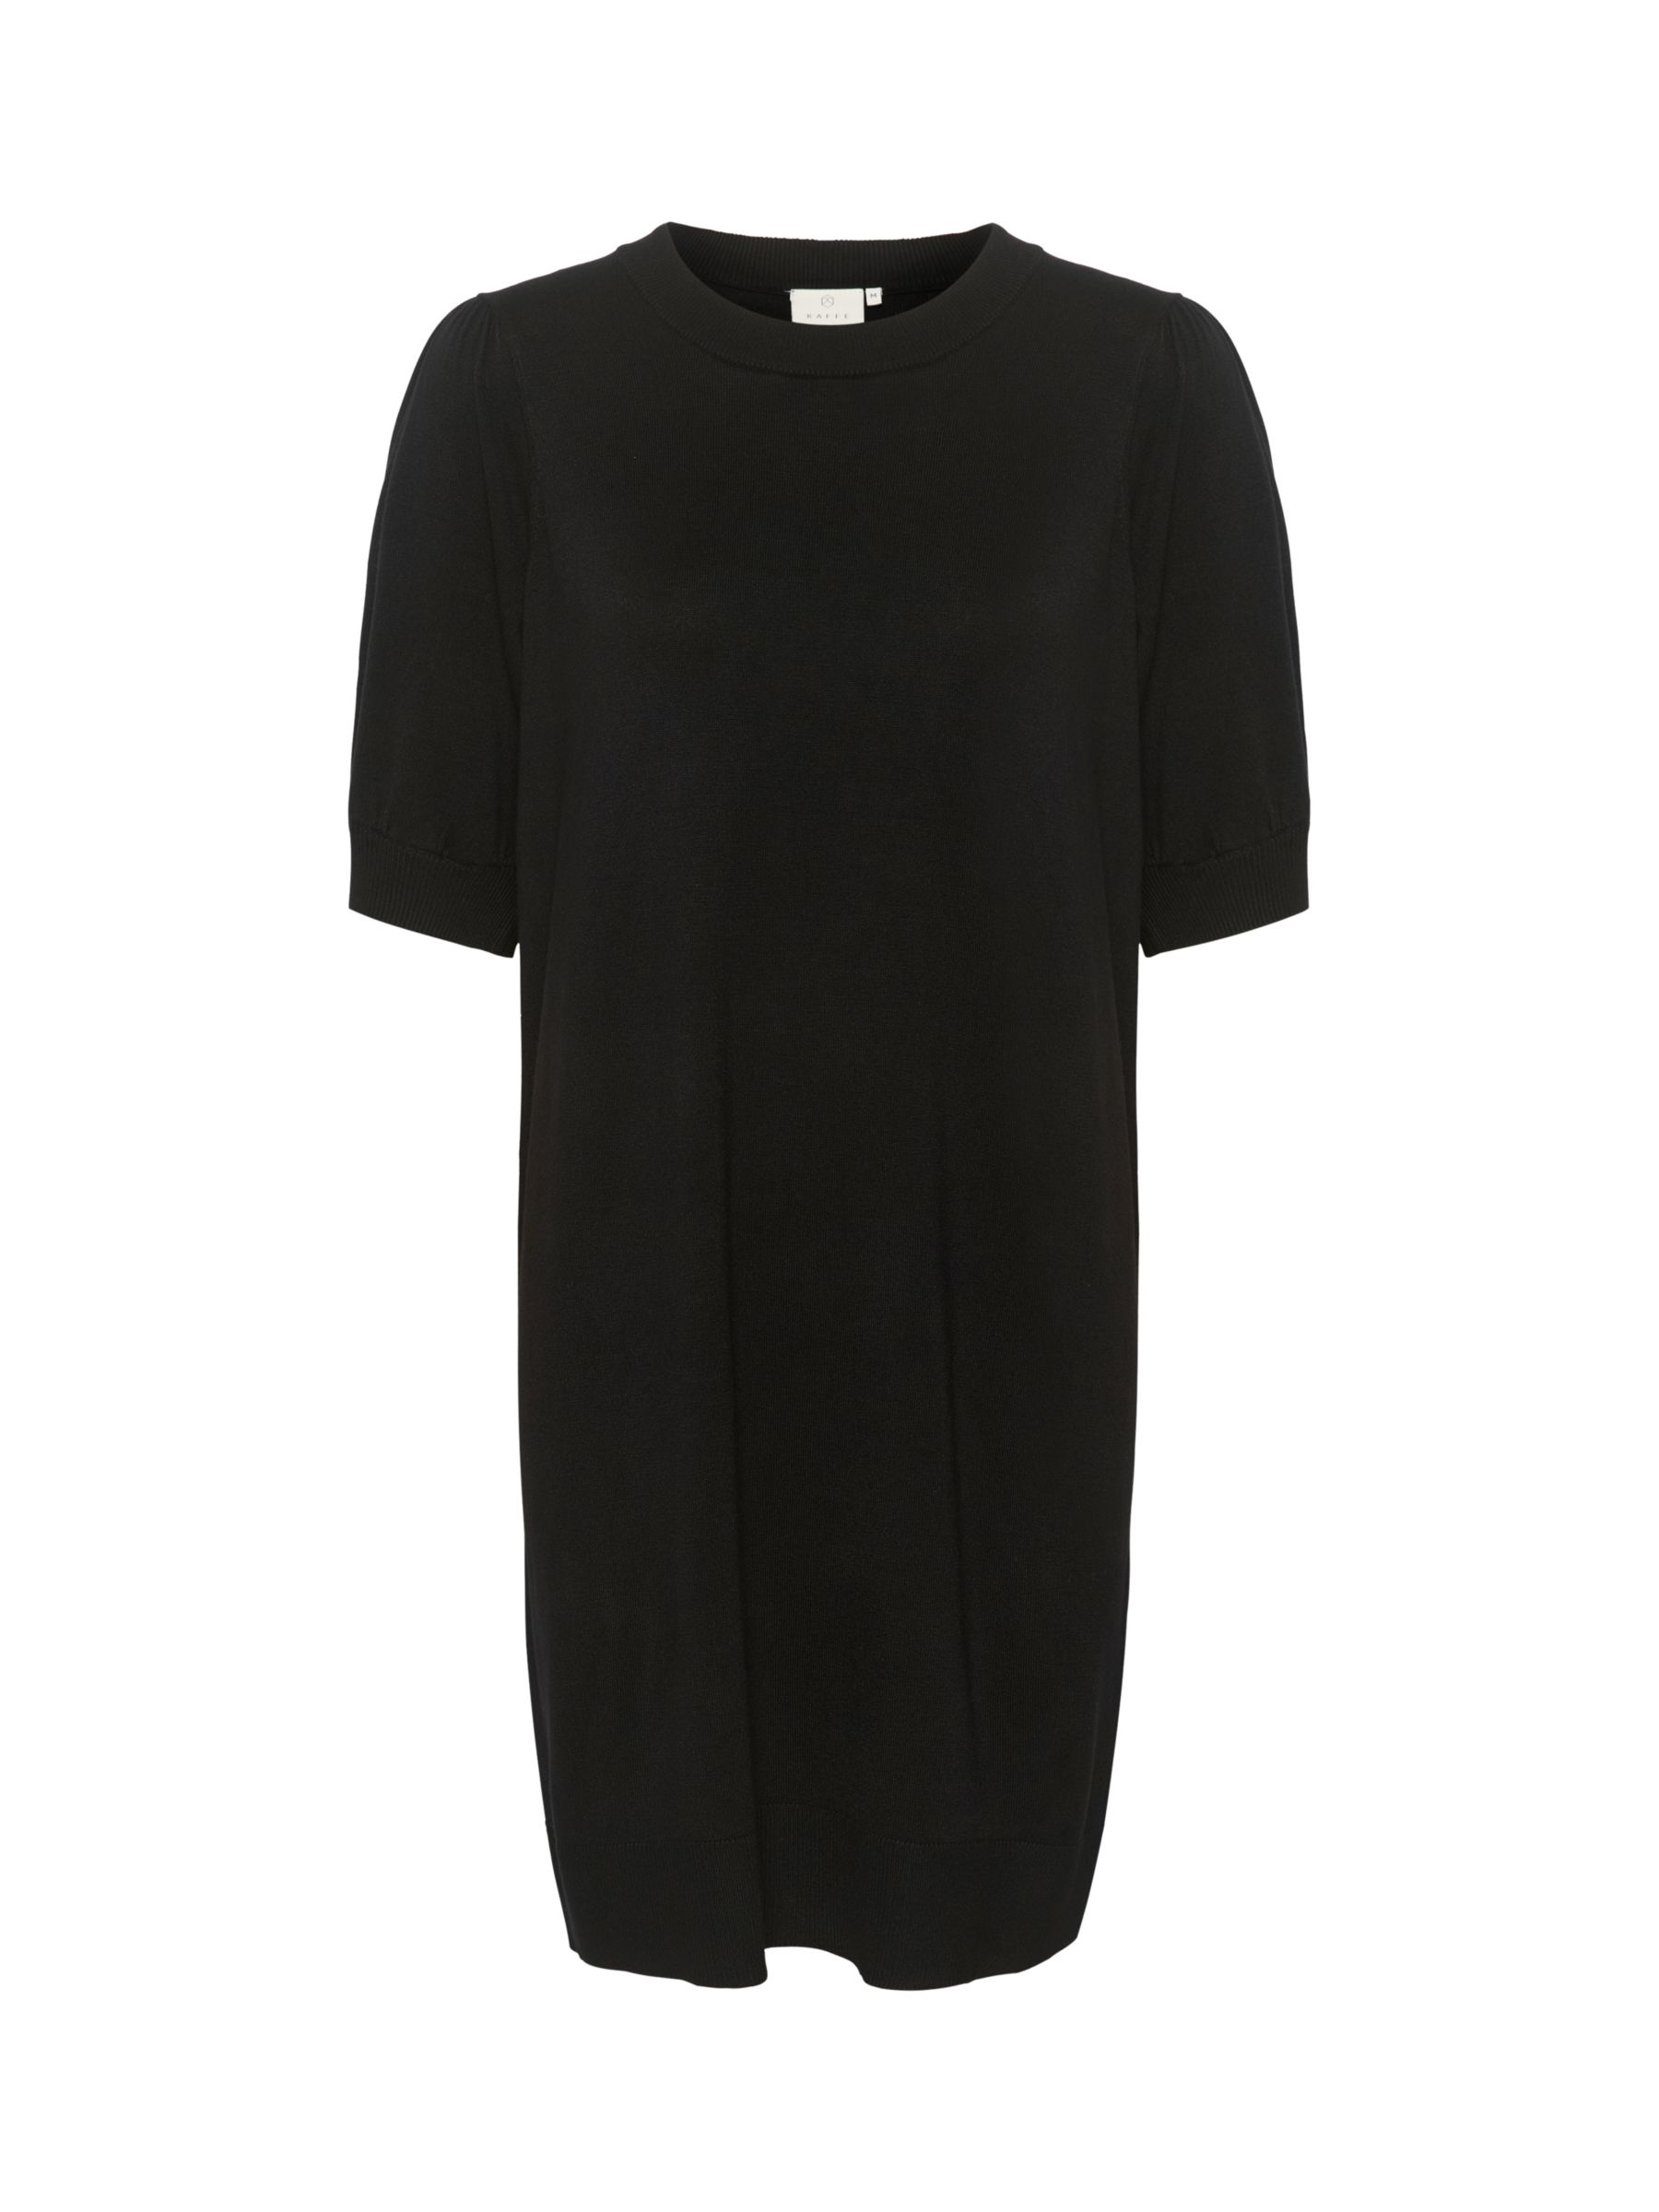 Buy KAFFE Lizza Knit Mini Dress, Black Online at johnlewis.com